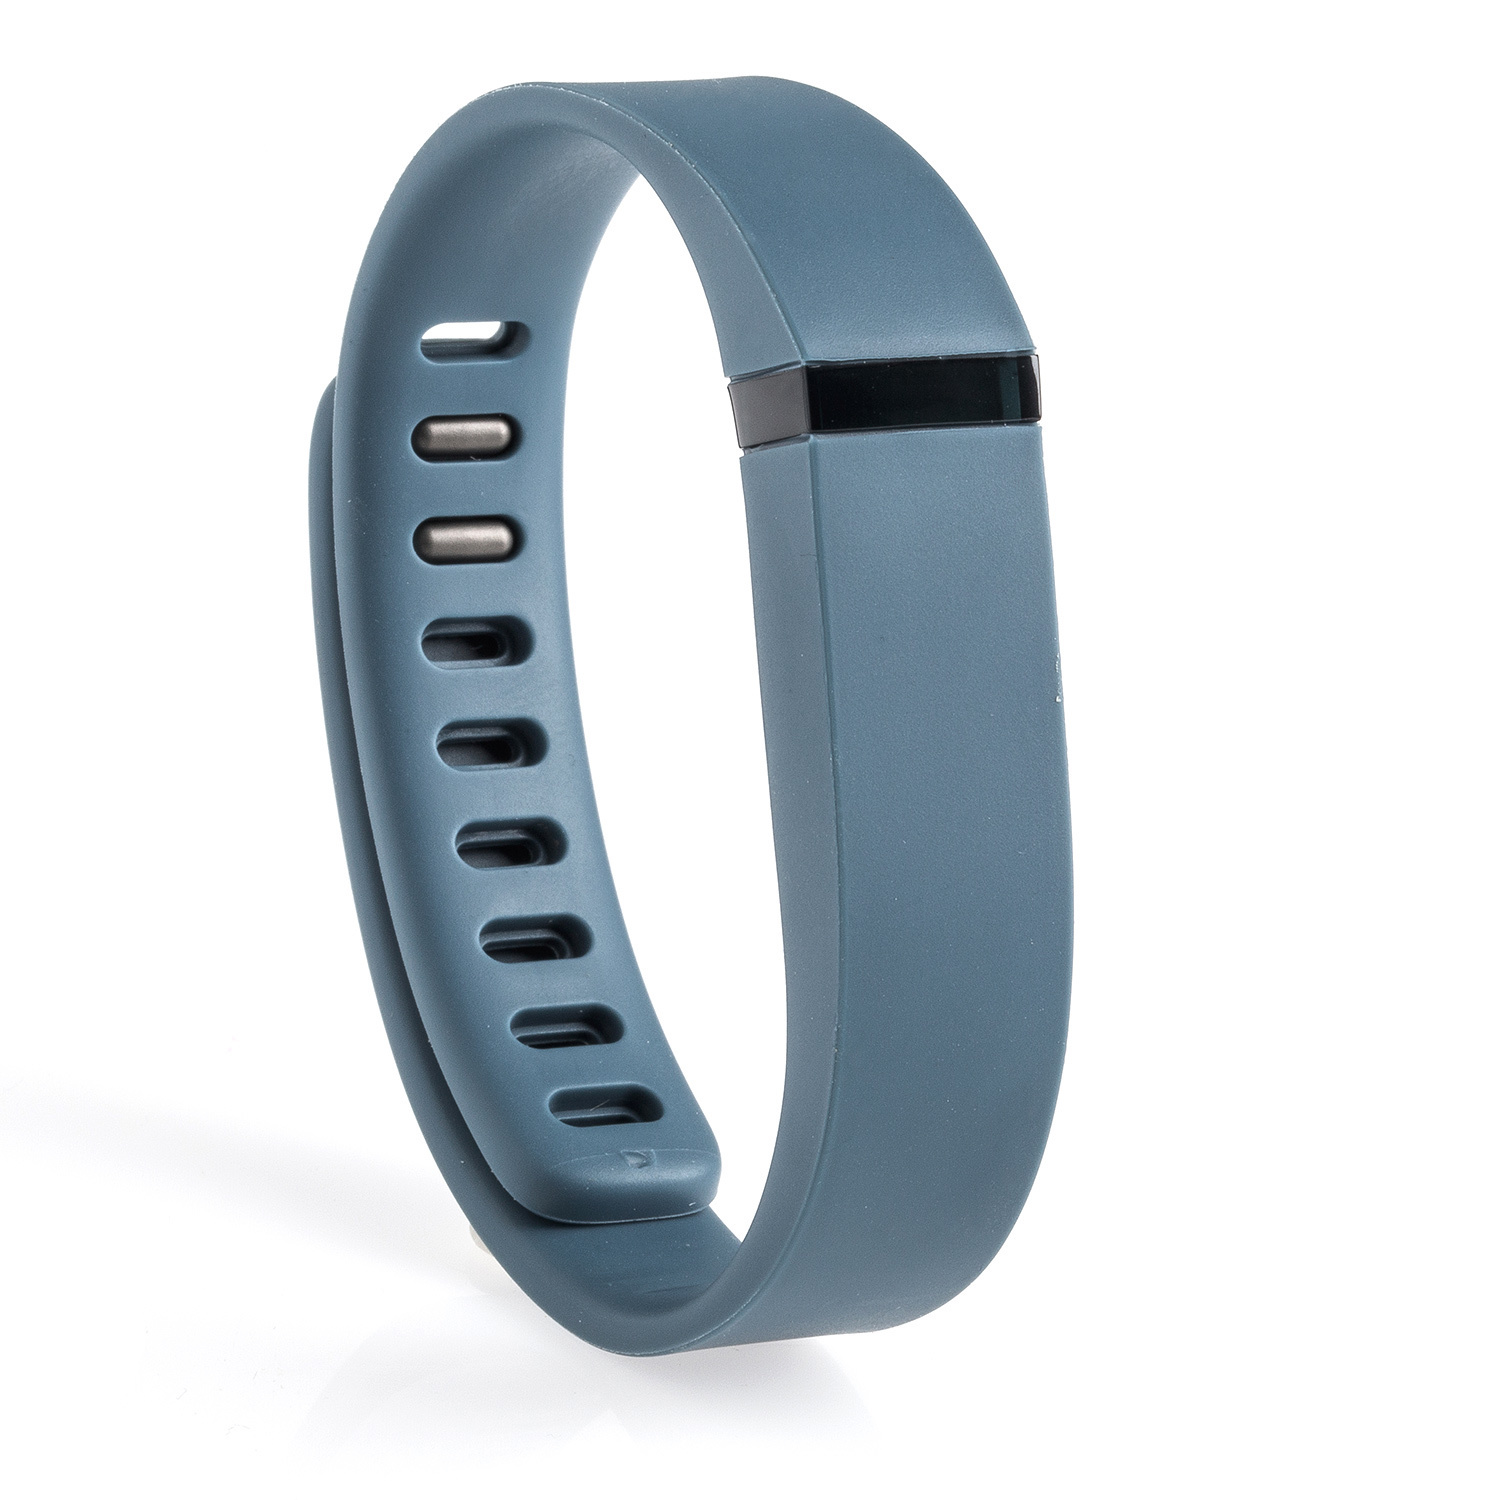 FitBit Flex Wireless Activity & Sleep Tracker Wristband FB401SL with S ...